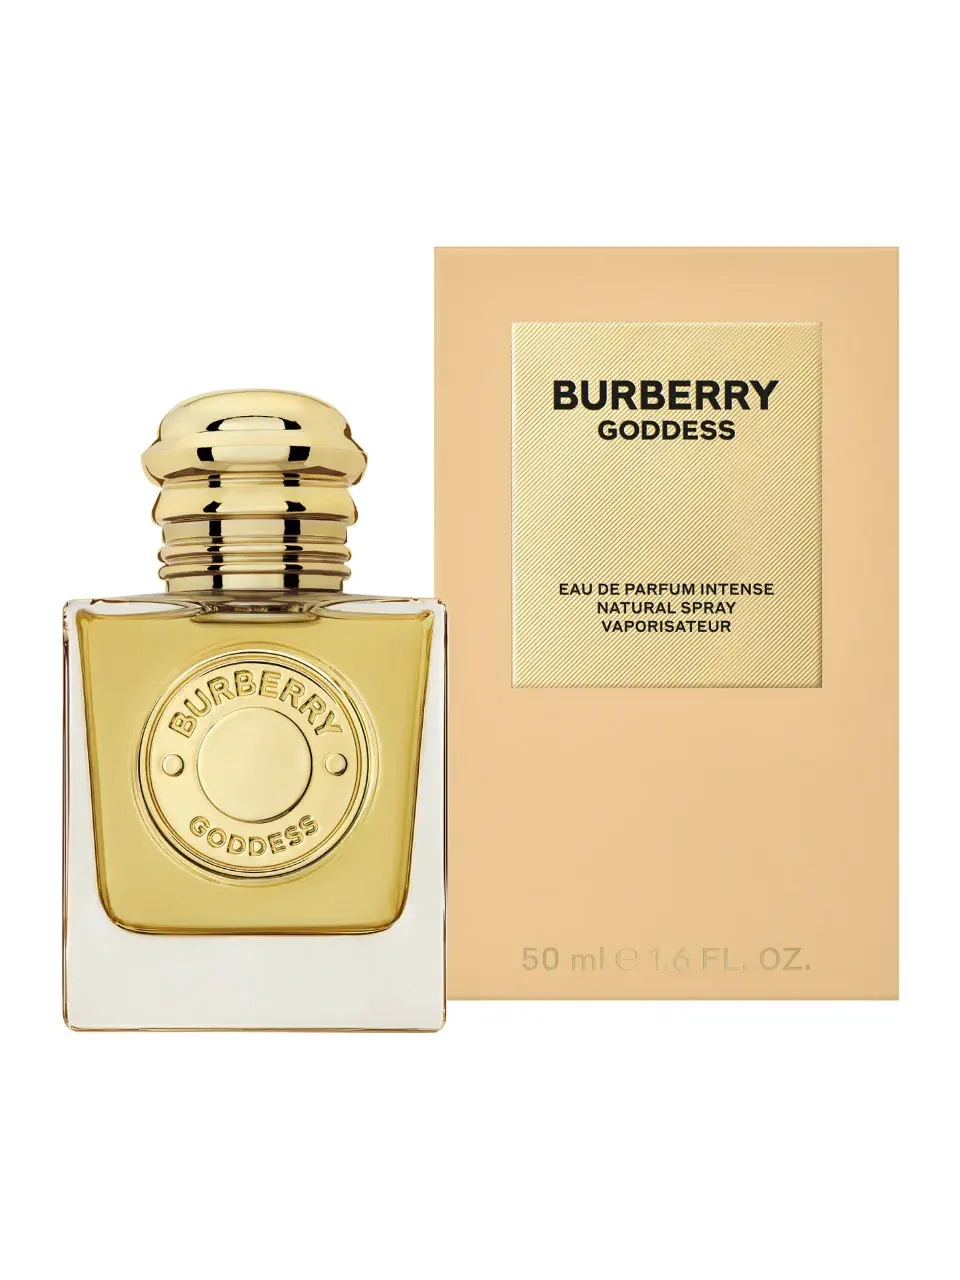 Burberry Goddess Eau de Parfum Intense 50 ml